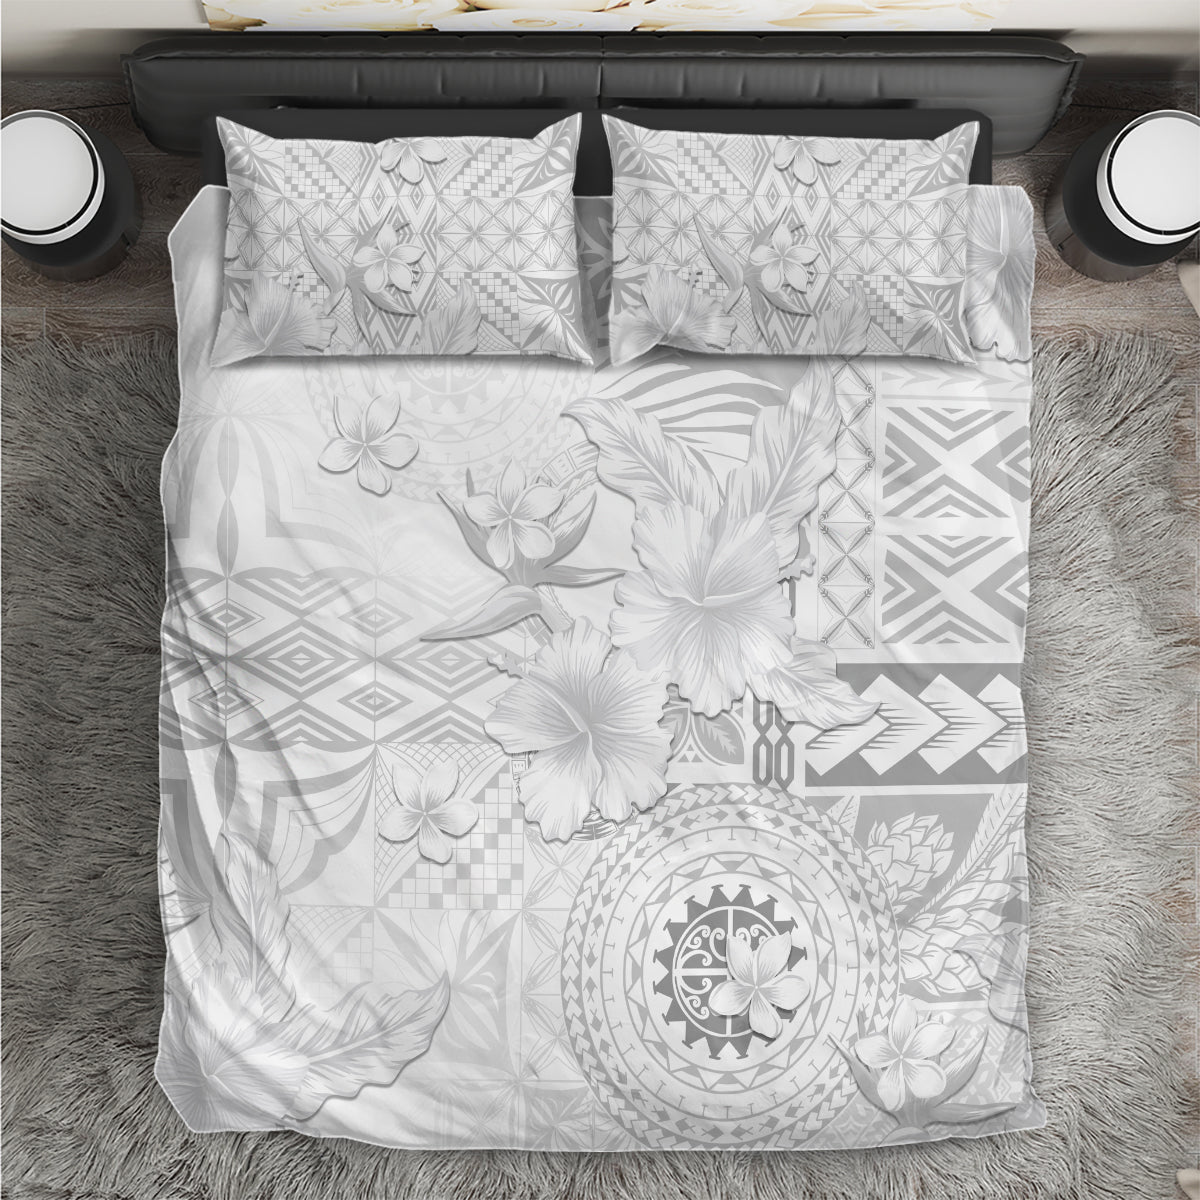 Samoa Siapo Pattern With White Hibiscus Bedding Set